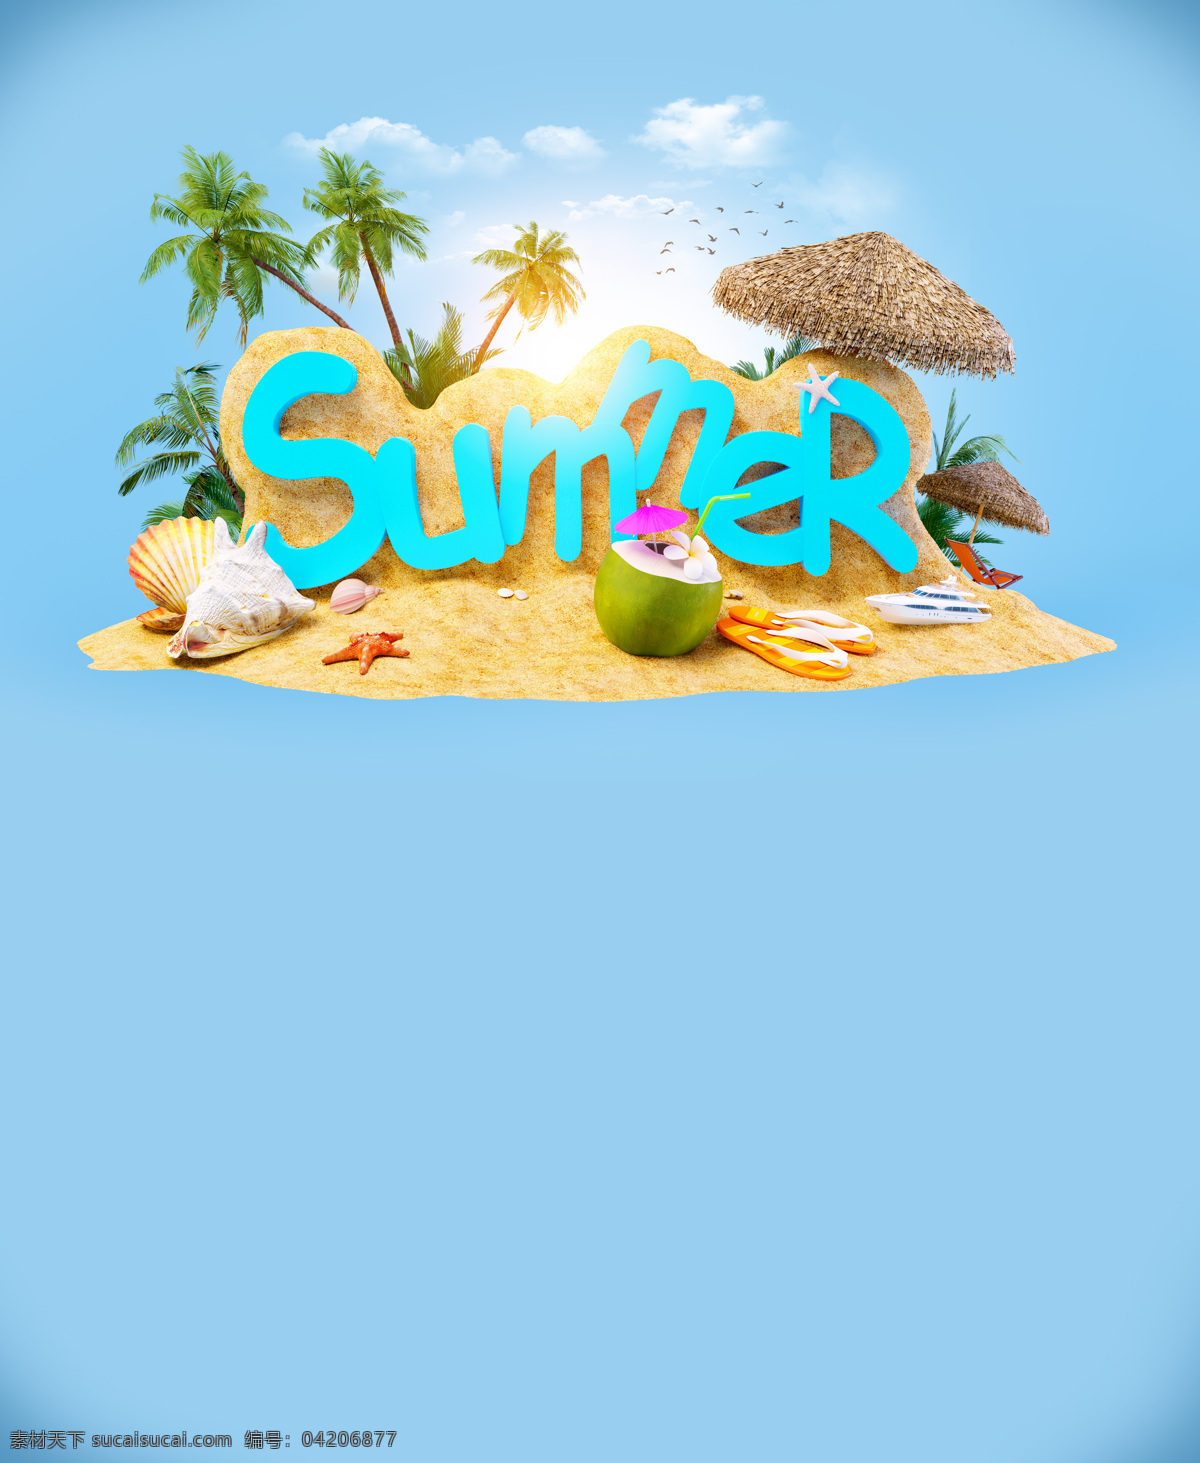 蓝色 夏季 度假 海报 夏天 椰树 沙滩 其他类别 生活百科 青色 天蓝色